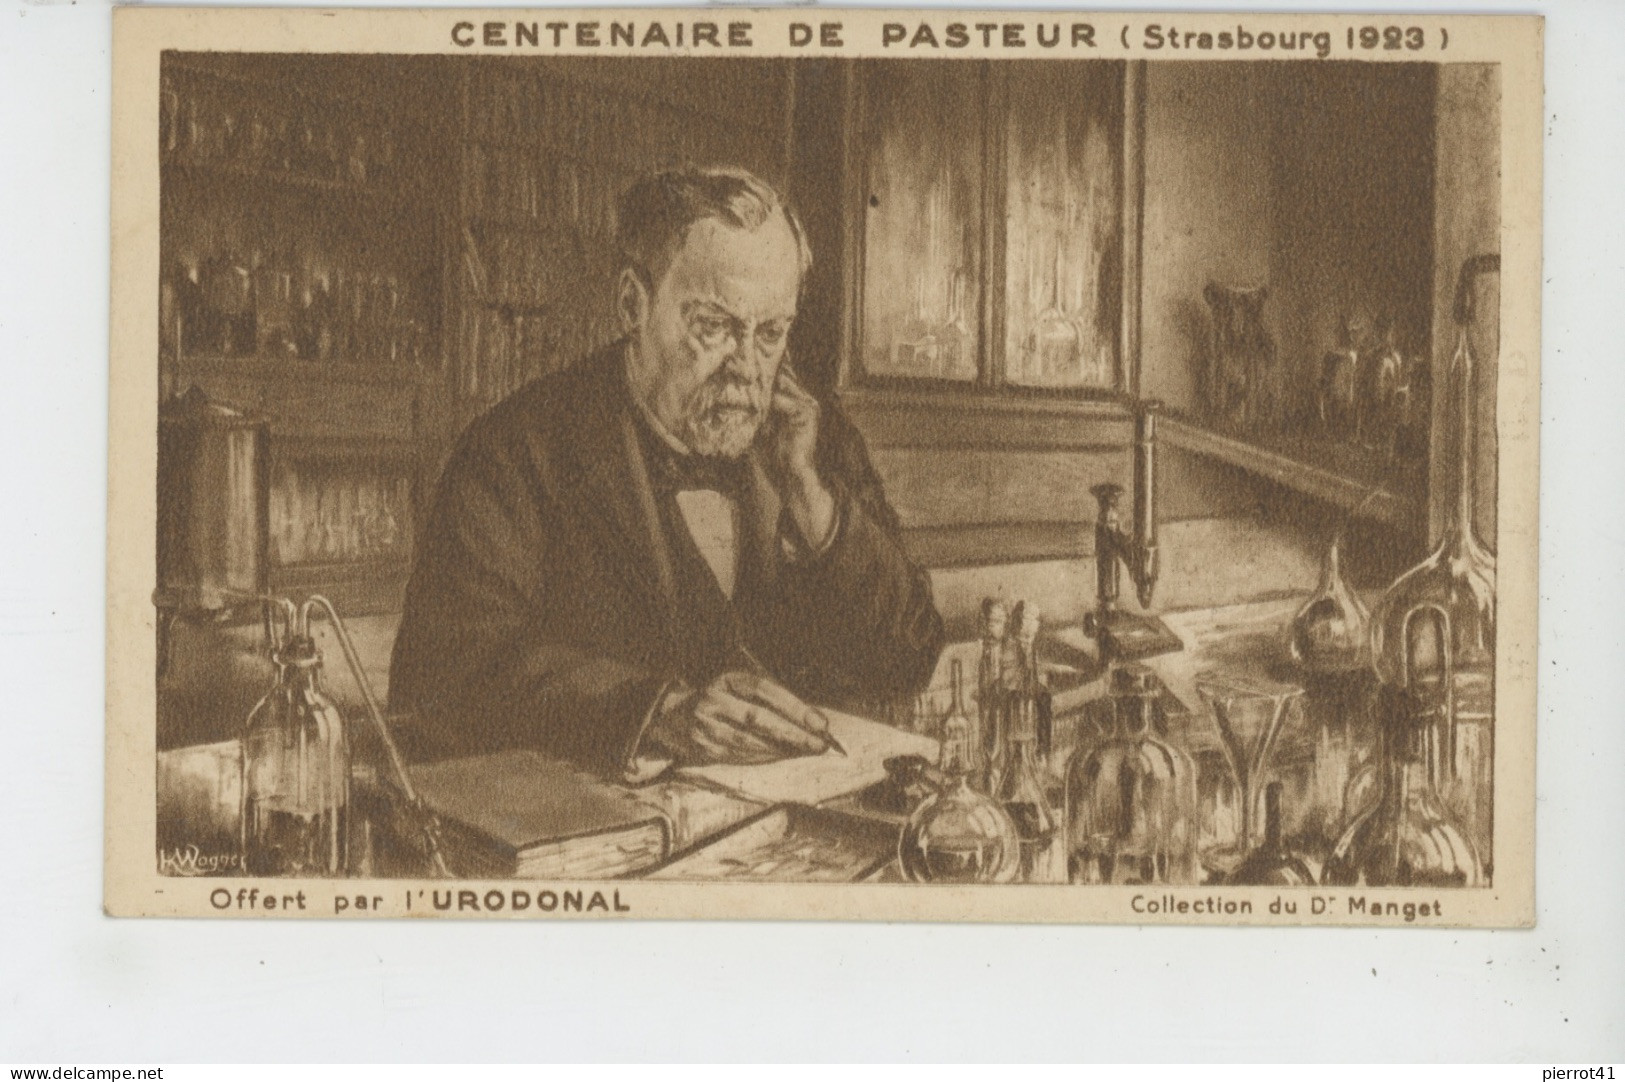 CELEBRITES - CENTENAIRE DE PASTEUR (Strasbourg 1923) - Carte Pub Pour Produit URODONAL - Avec Biographie De Pasteur - Nobel Prize Laureates